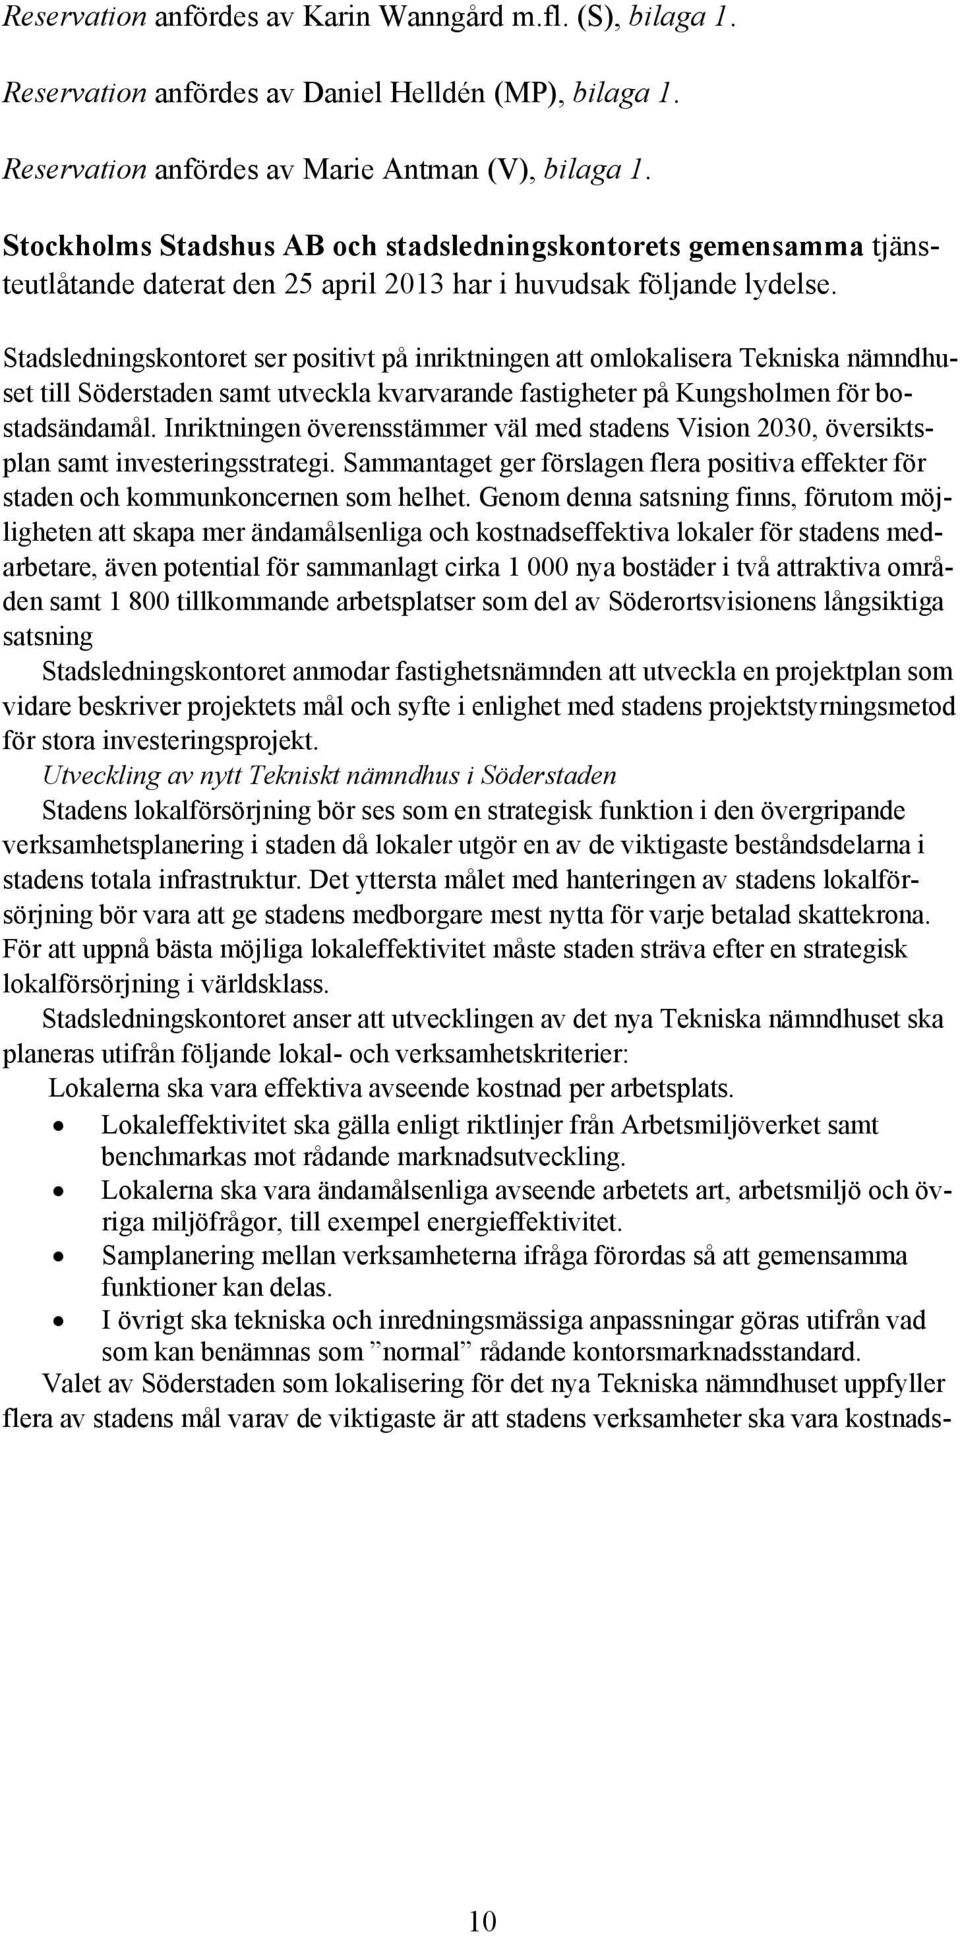 Stadsledningskontoret ser positivt på inriktningen att omlokalisera Tekniska nämndhuset till Söderstaden samt utveckla kvarvarande fastigheter på Kungsholmen för bostadsändamål.